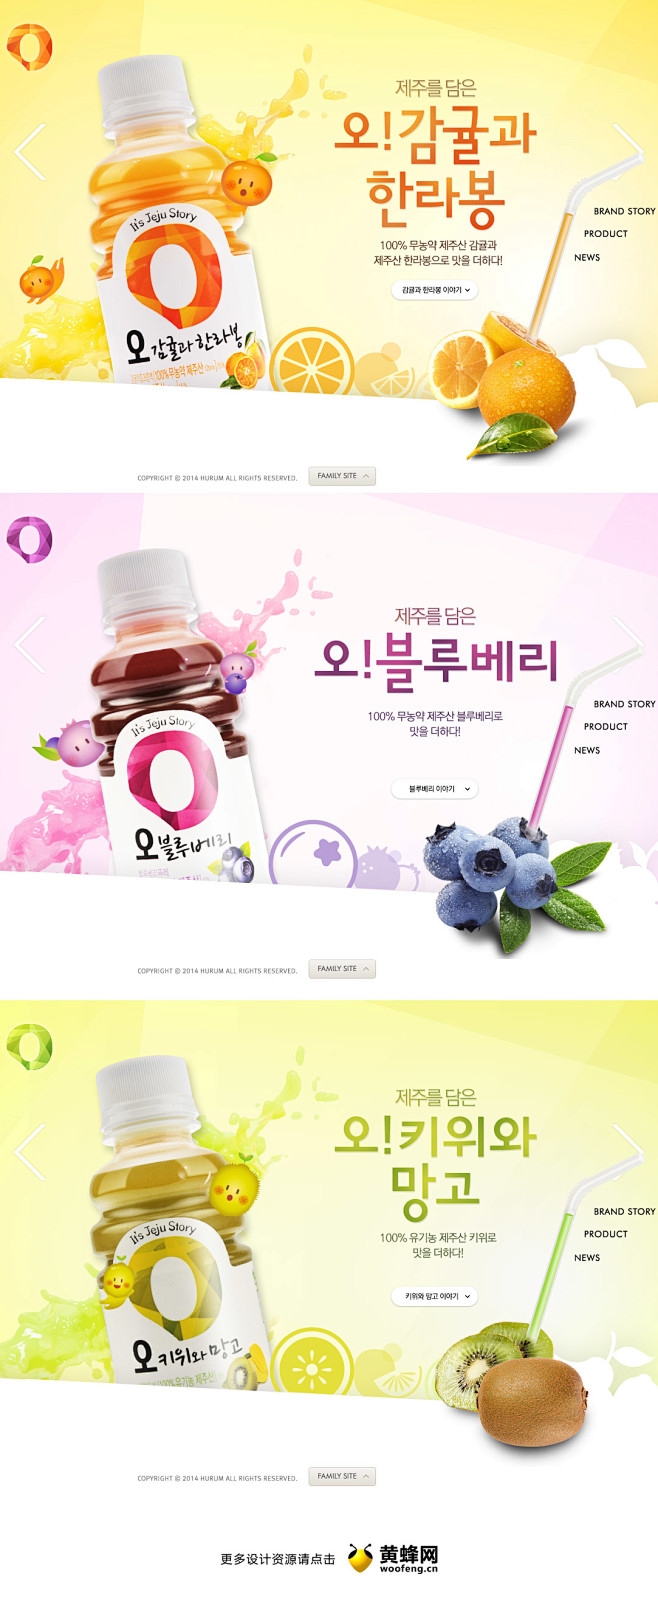 O-Juice - 网页设计 - 黄蜂网...